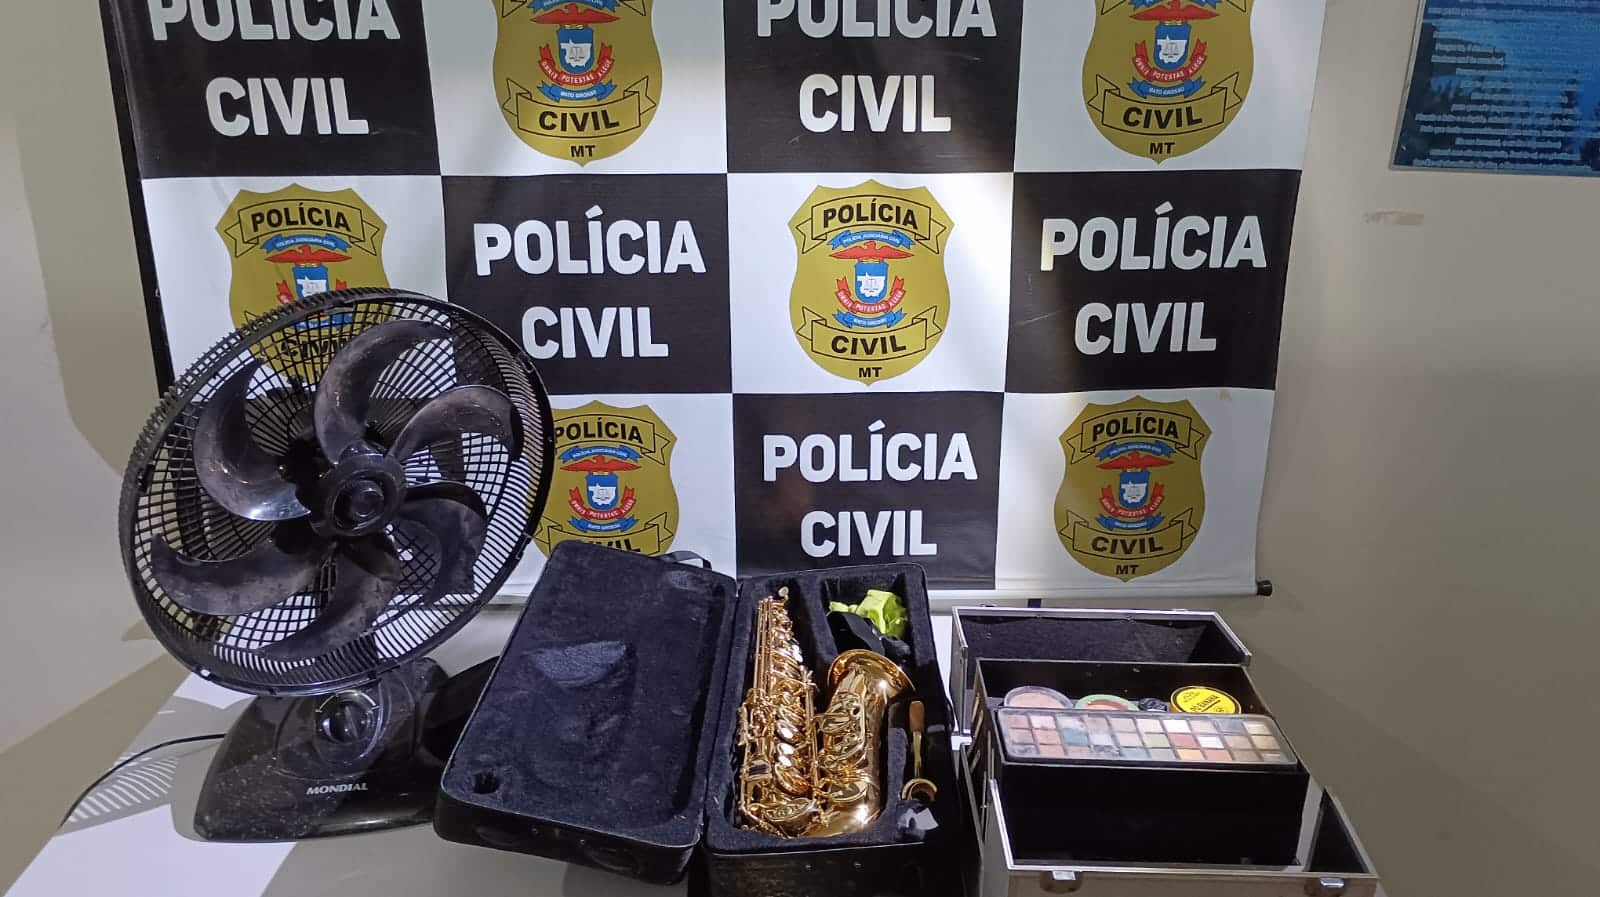 Polícia Civil recupera saxofone avaliado em R$ 8 mil furtado em Cáceres